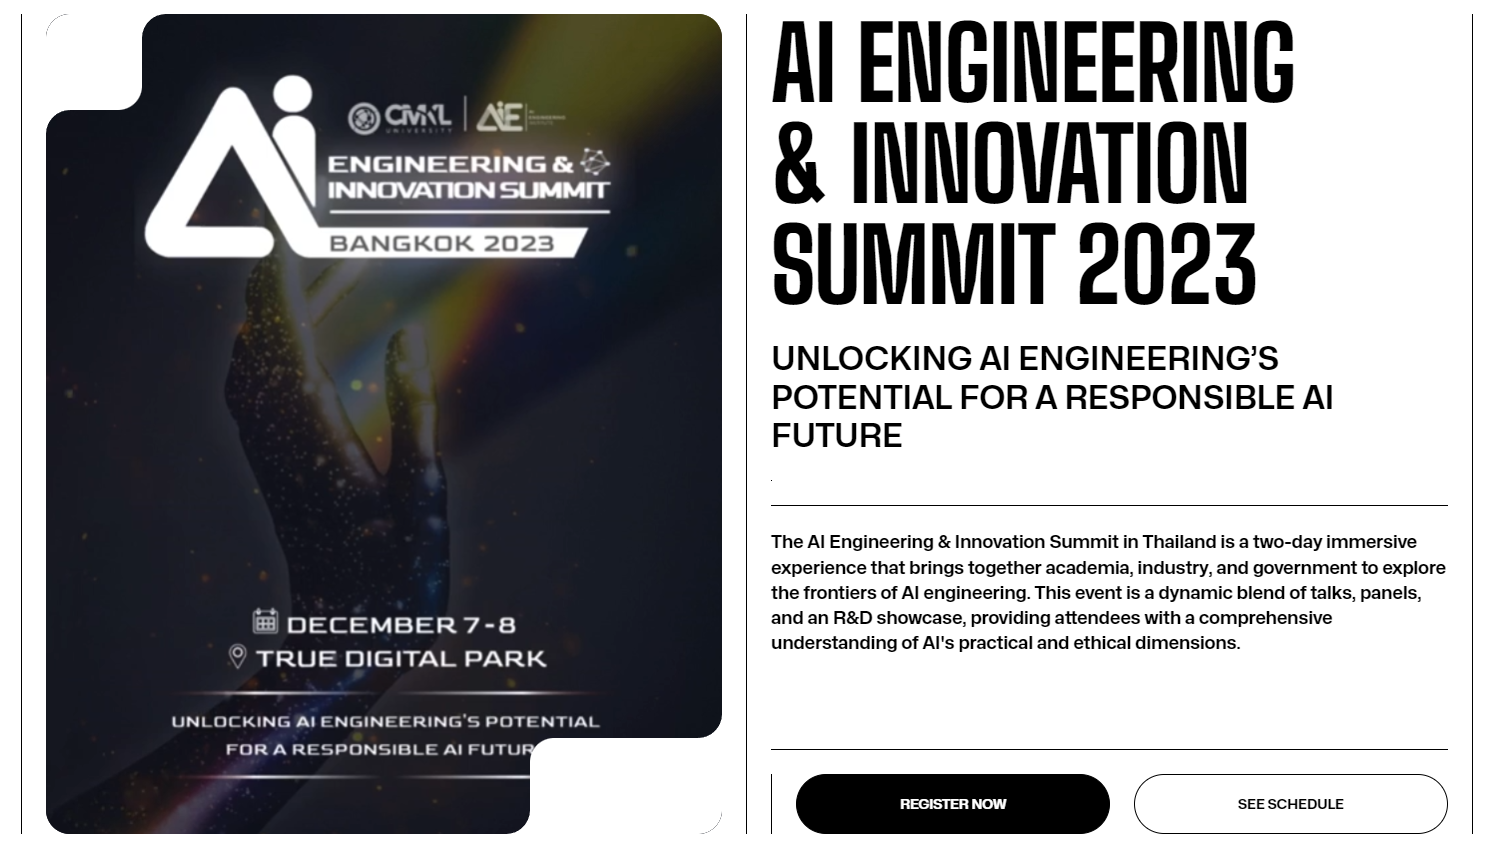 มหาวิทยาลัยซีเอ็มเคแอล (CMKL) ร่วมกับ สถาบันวิศวกรรมปัญญาประดิษฐ์ ชวนมาเตรียมความพร้อมและเก็บความรู้ ในงาน AI Engineering & Innovation Summit 2023